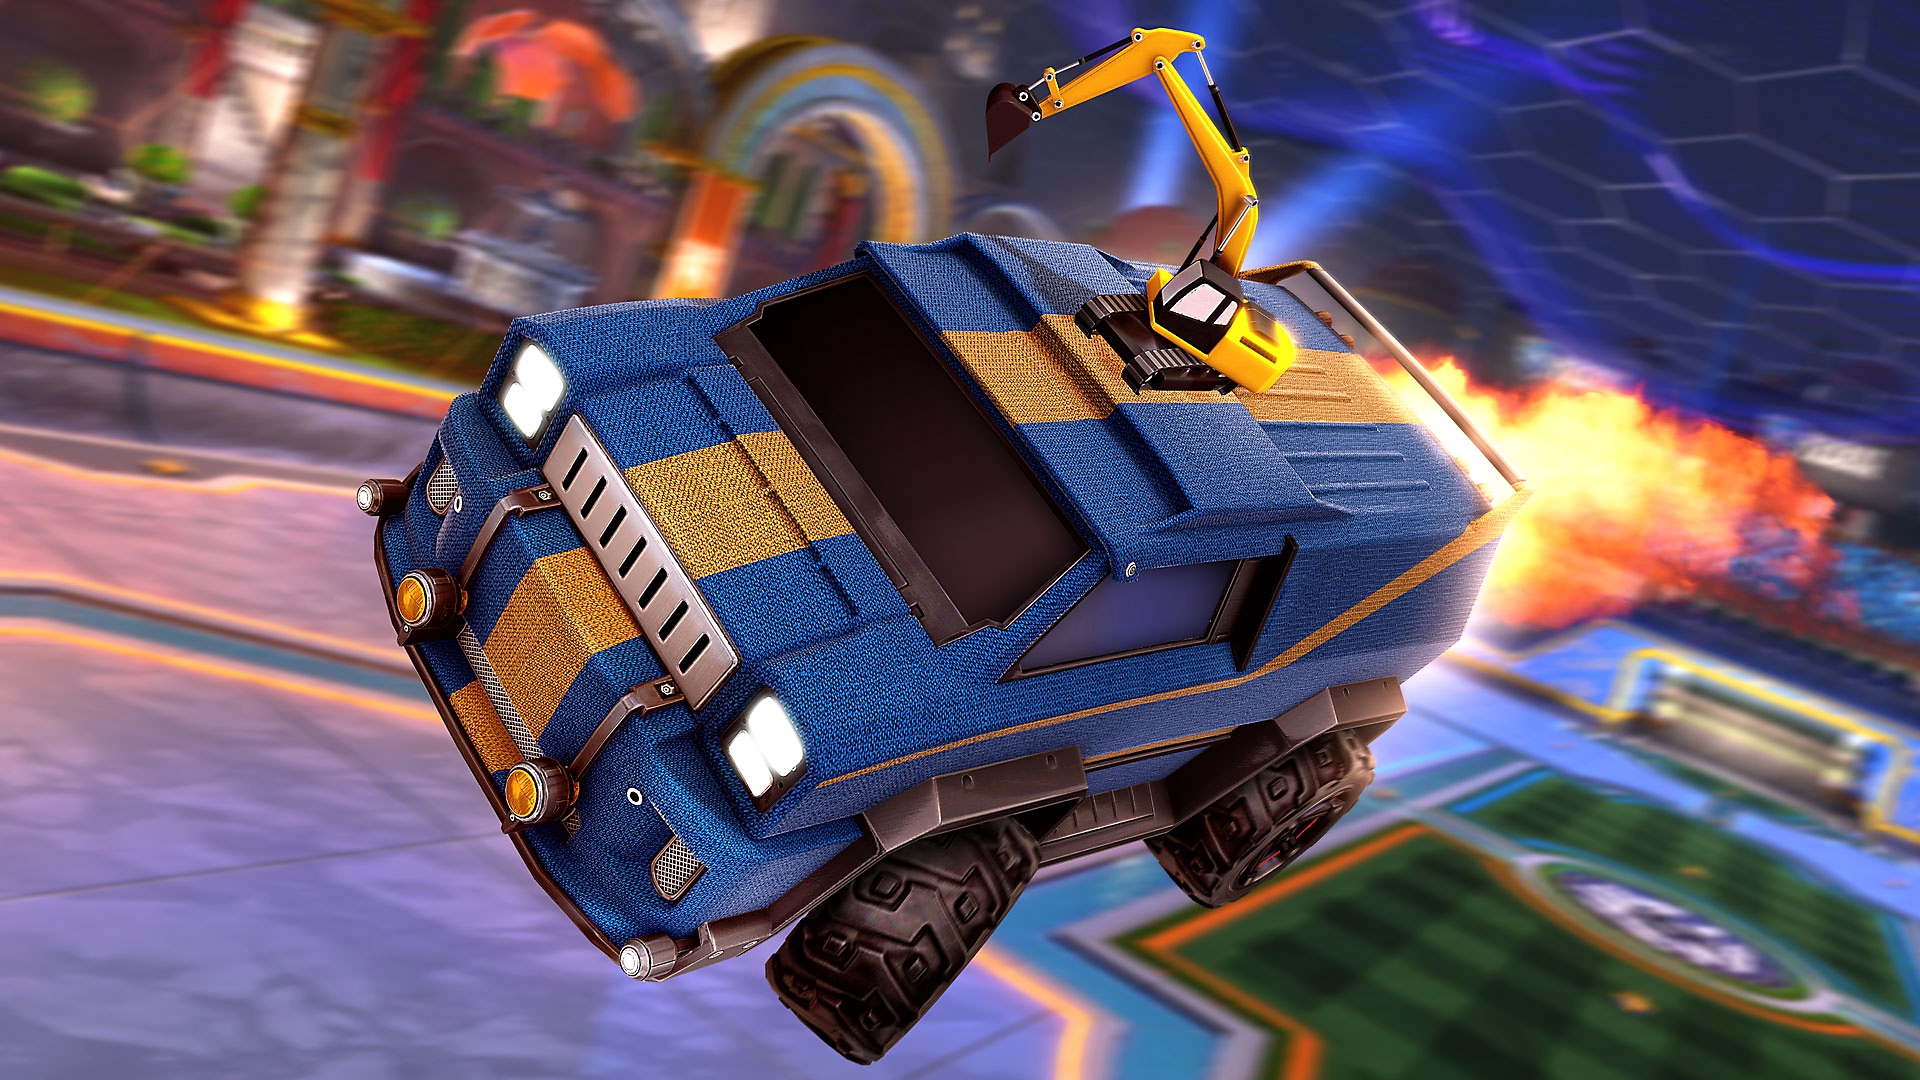 A Rocket League képernyőképe, rajta egy kék furgon sárga versenycsíkkal